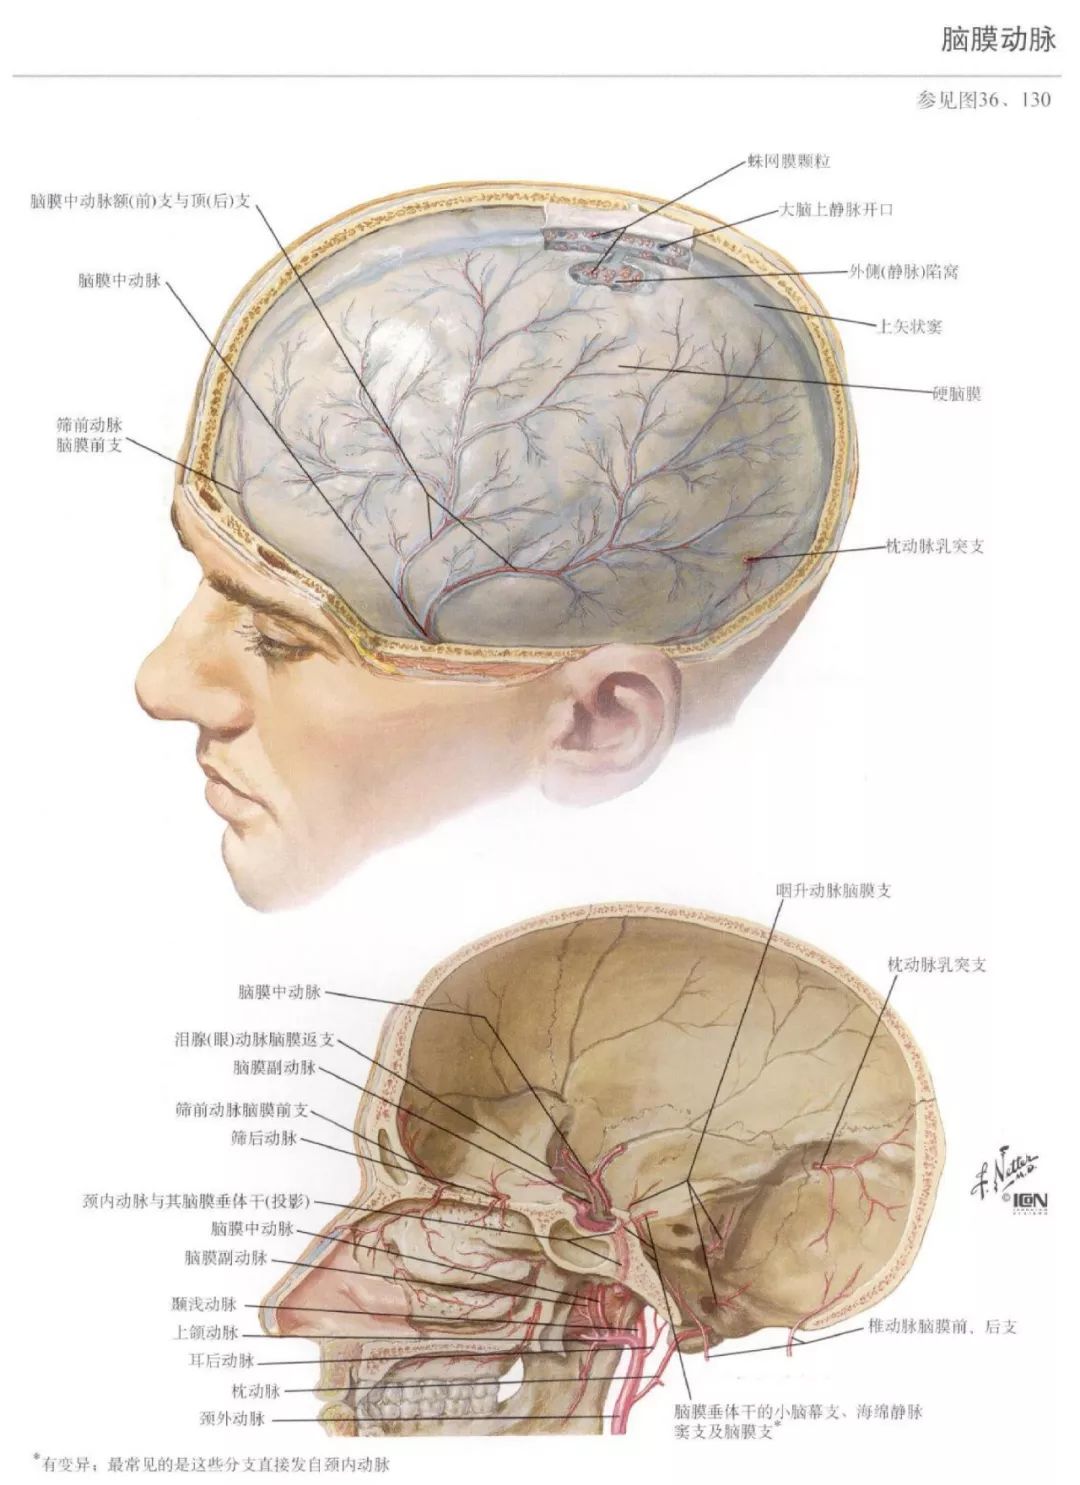 神经解剖脑部高清图谱奈特解剖学习资料